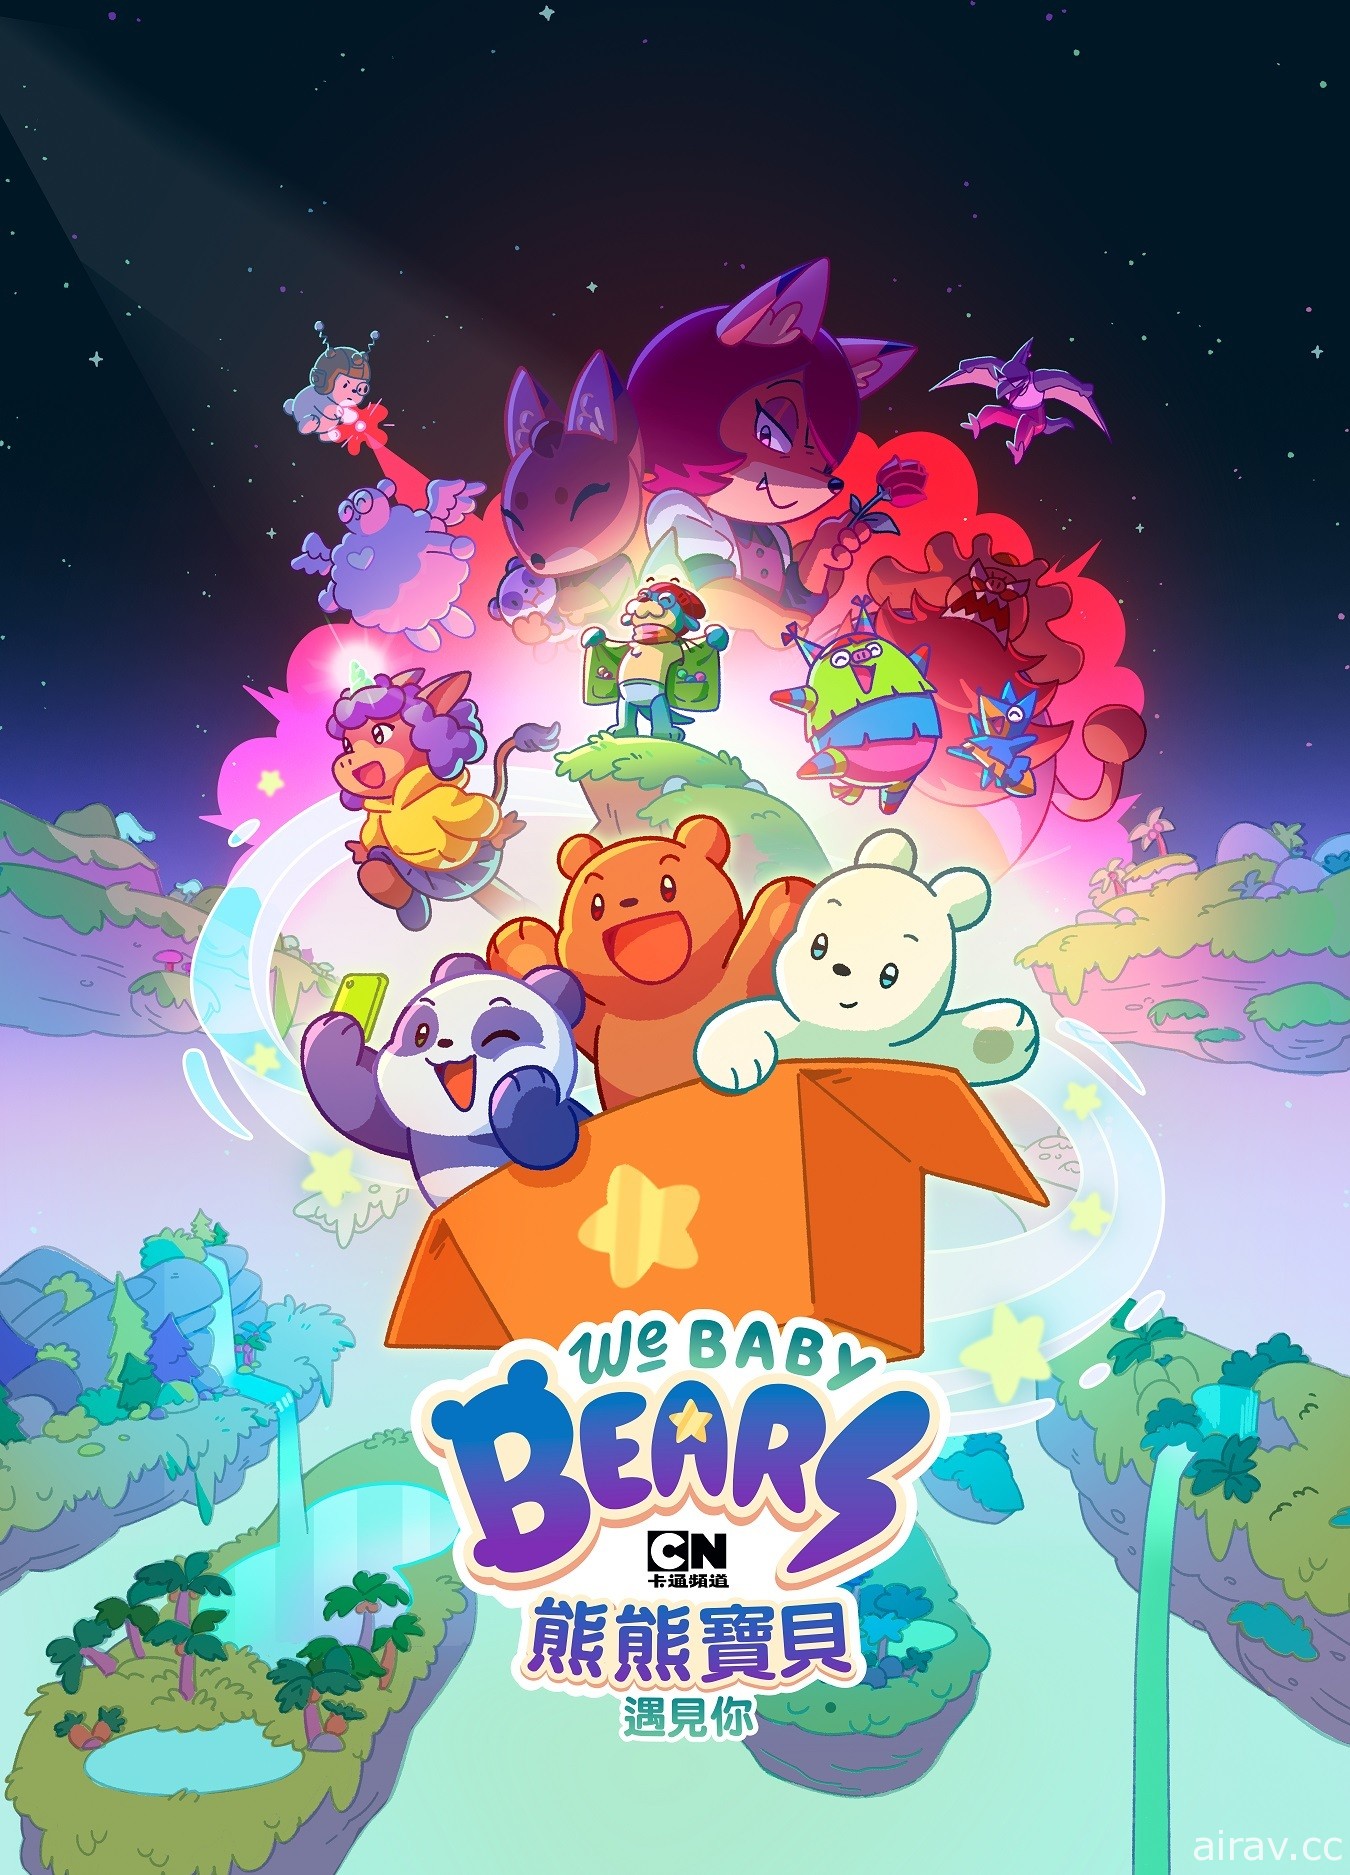 一同踏上充滿魔法的奇幻旅程《熊熊寶貝遇見你》1 月 8 日卡通頻道首播